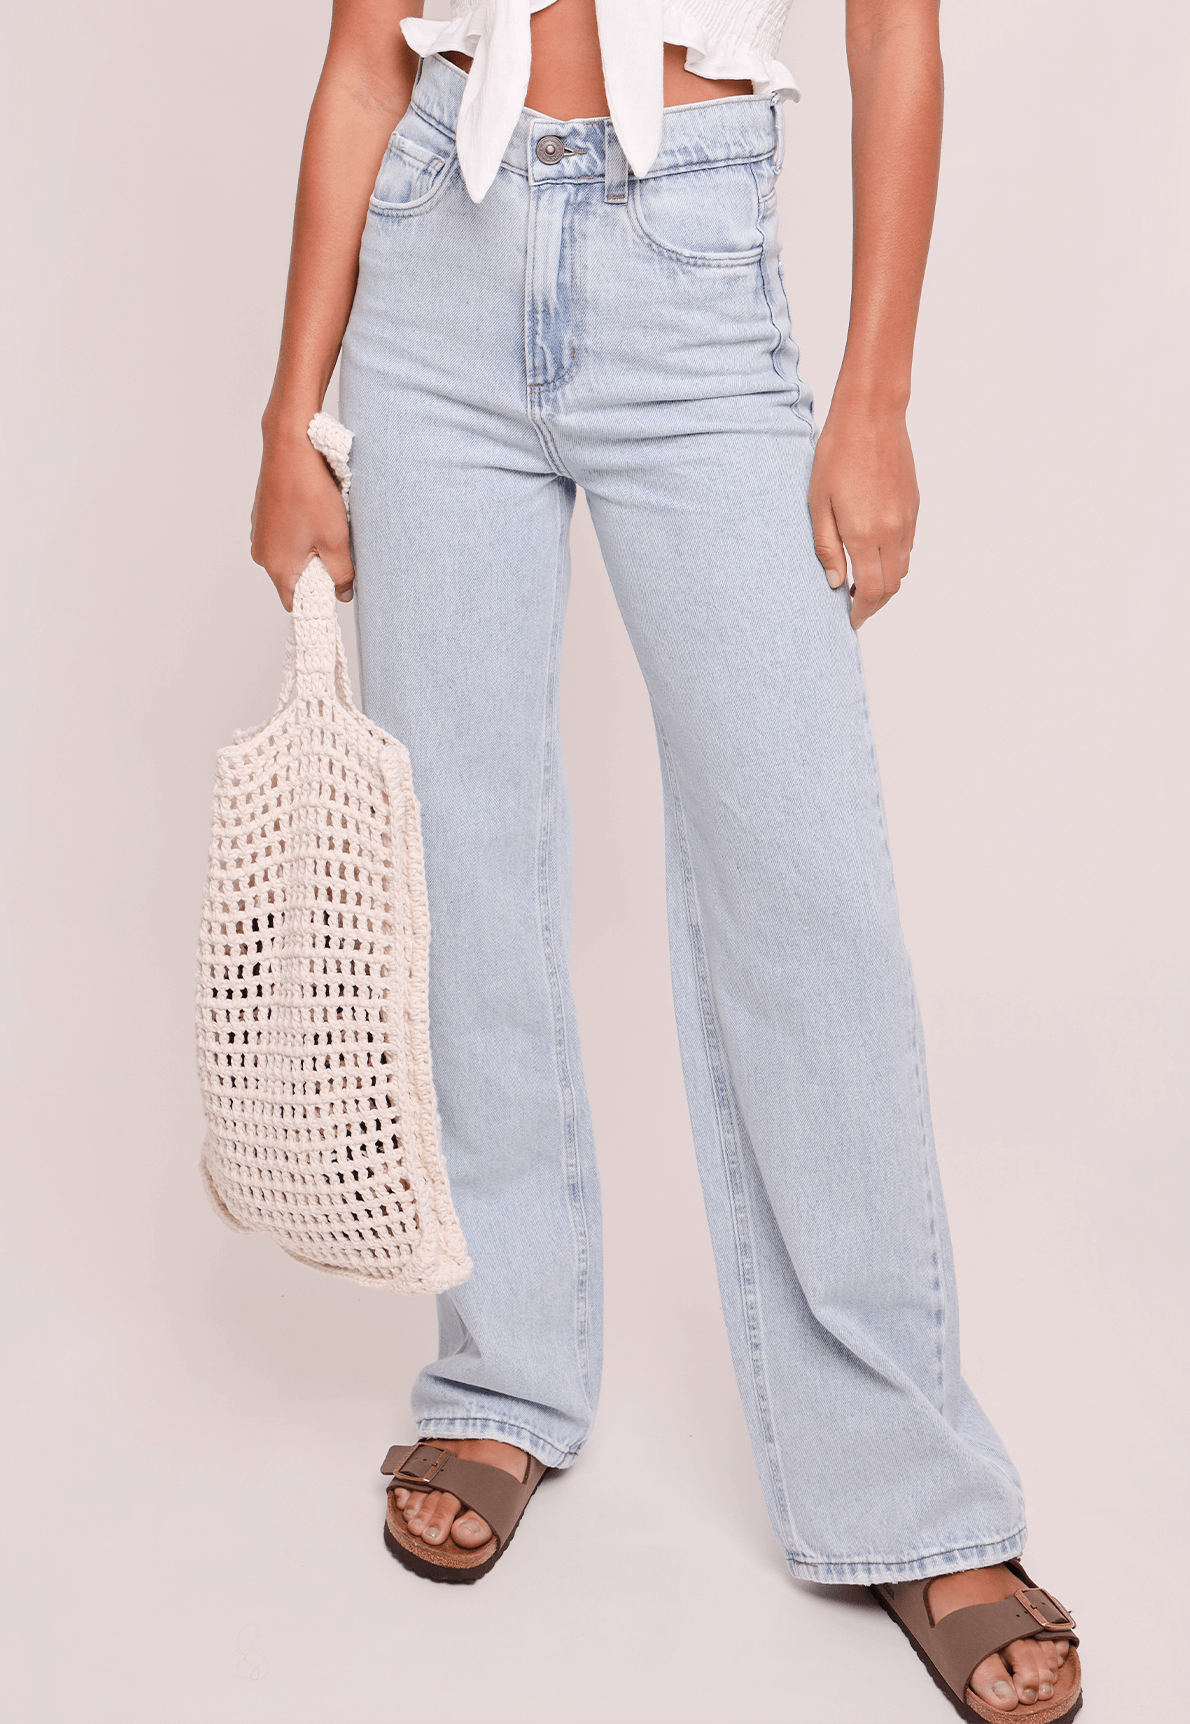 41180-calca-jeans-coconut-mundo-lolita-02